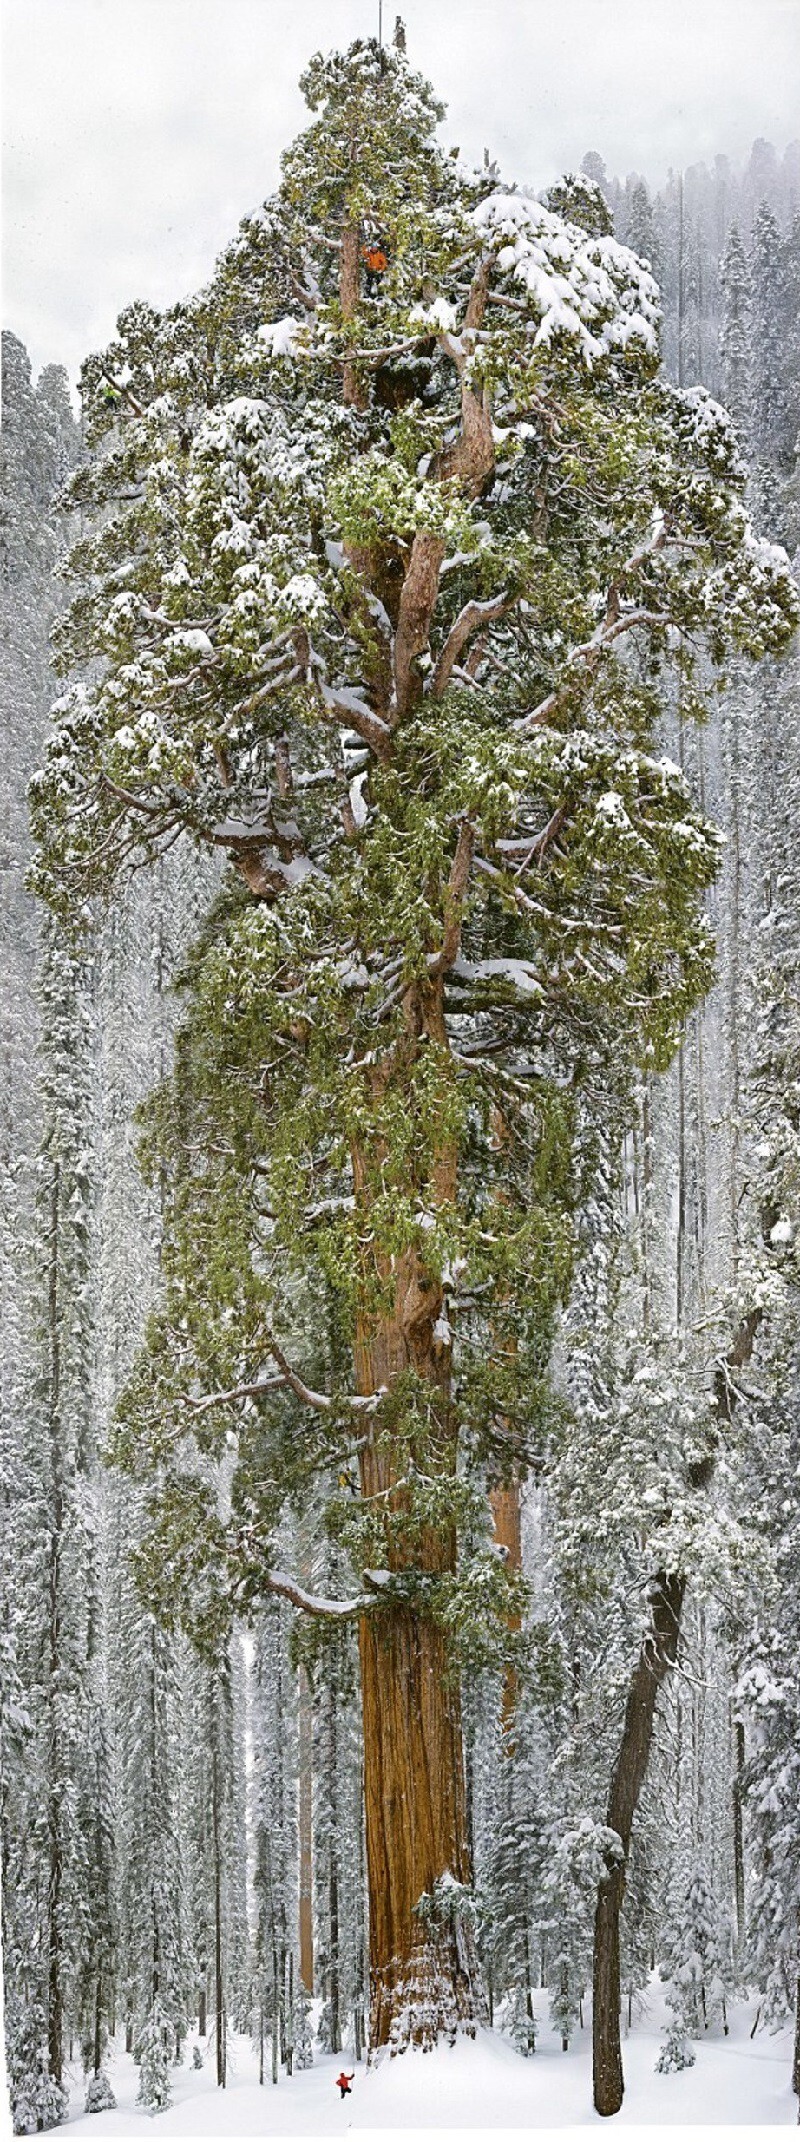 Они посягнули на святое и собственноручно измерили дерево, которое считается одним из самых больших деревьев в мире.